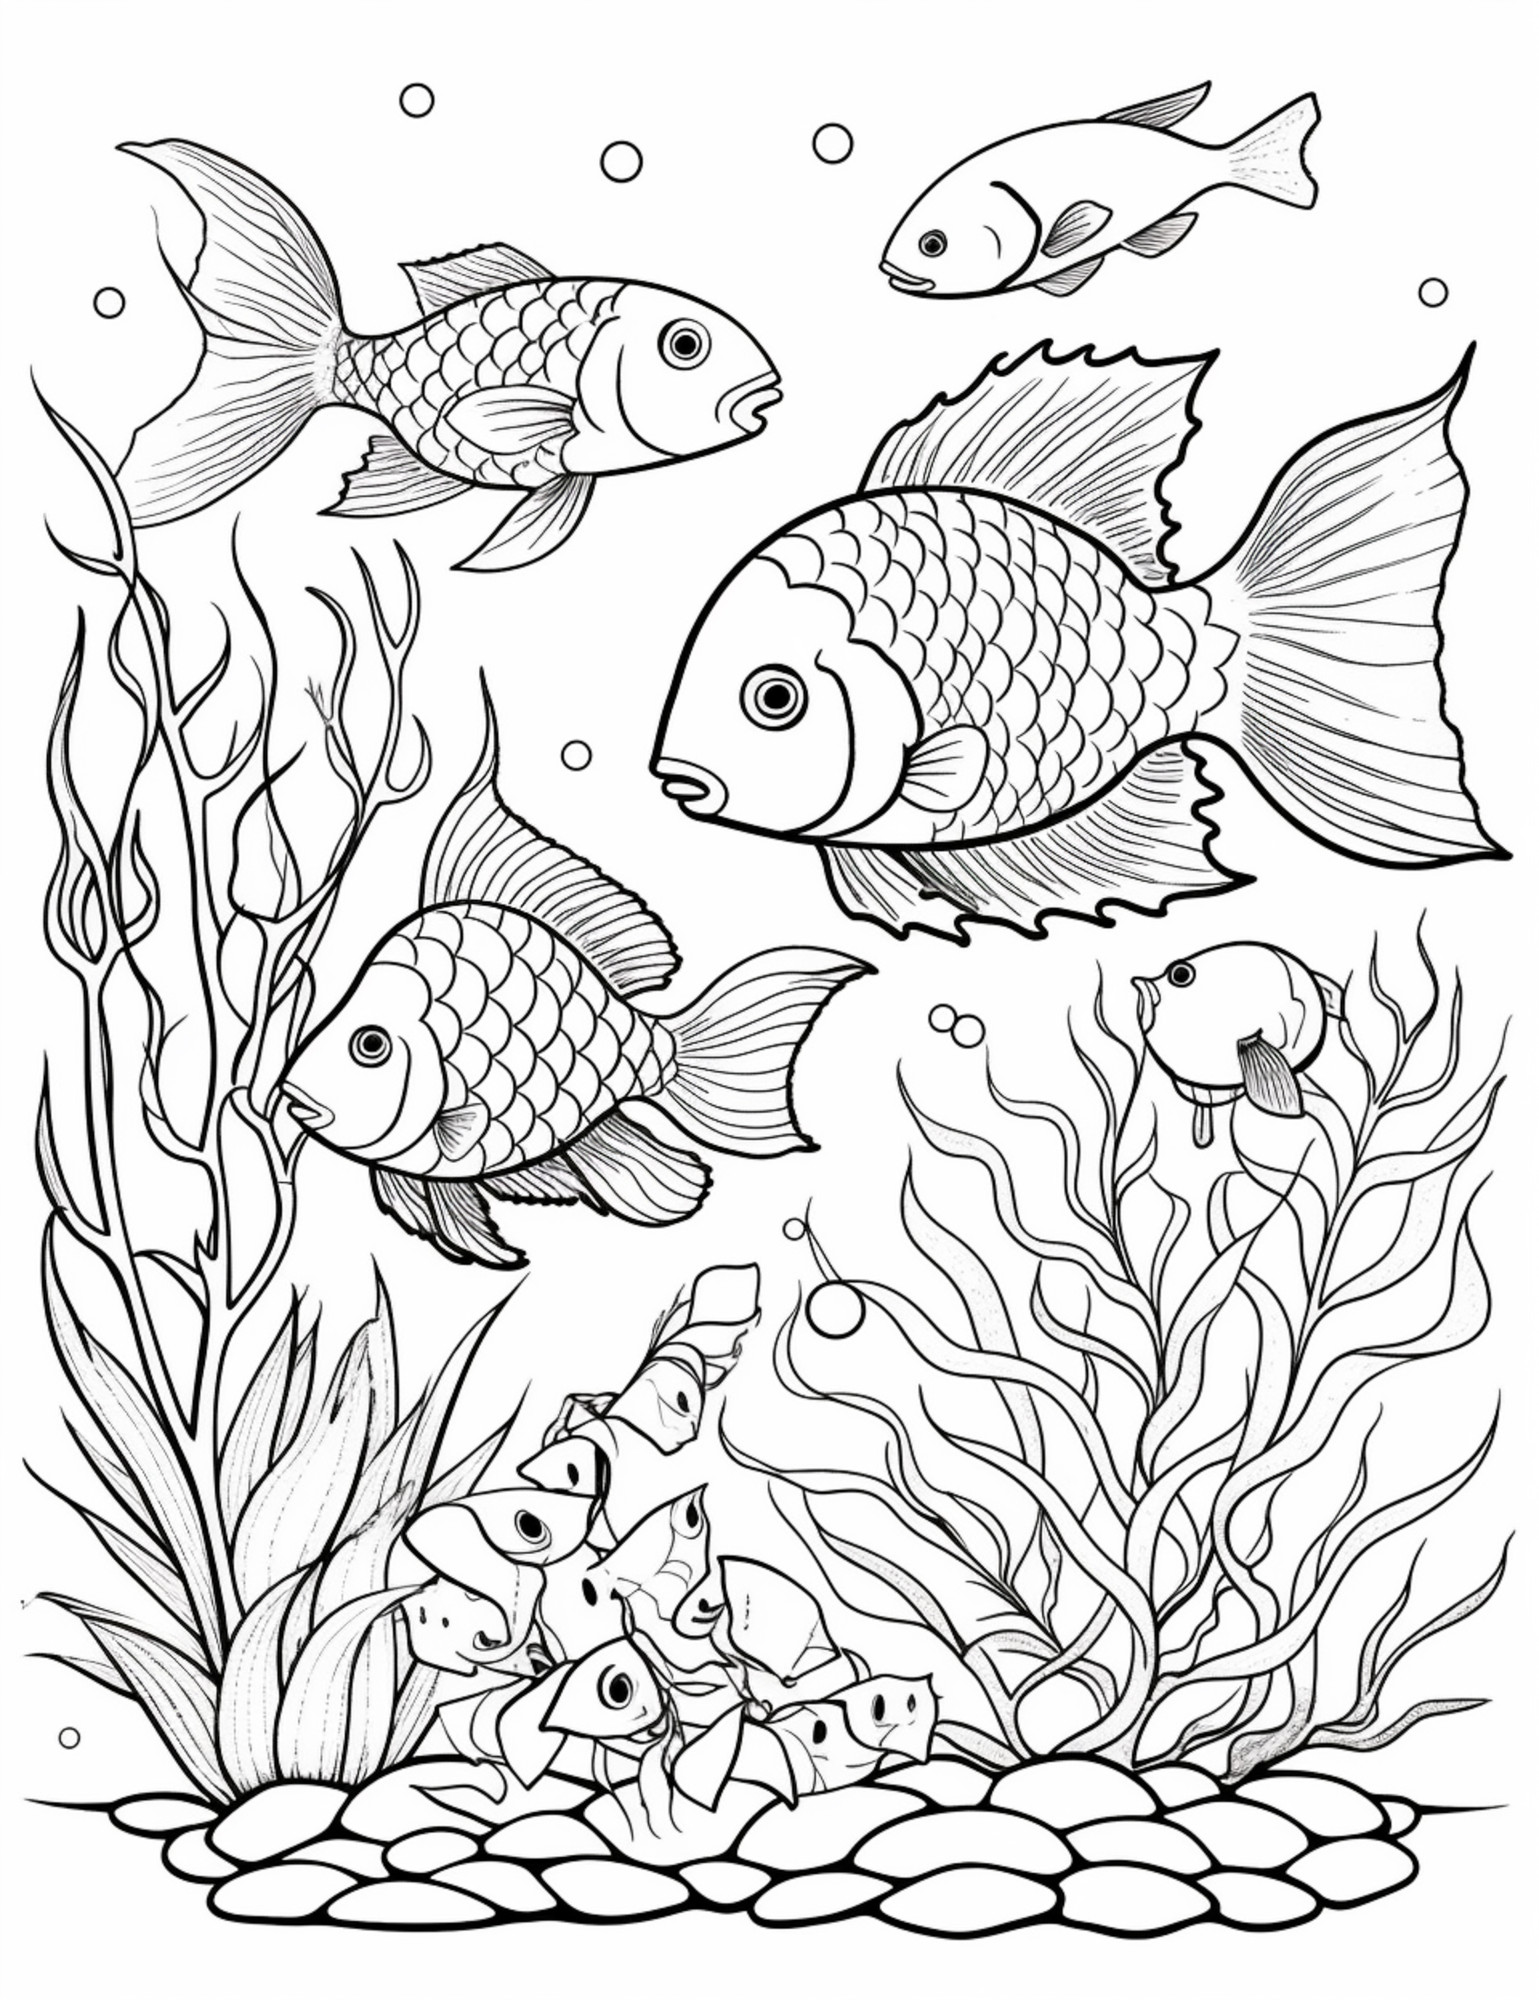 Раскраска для детей: рыбки с морскими растениями в воде